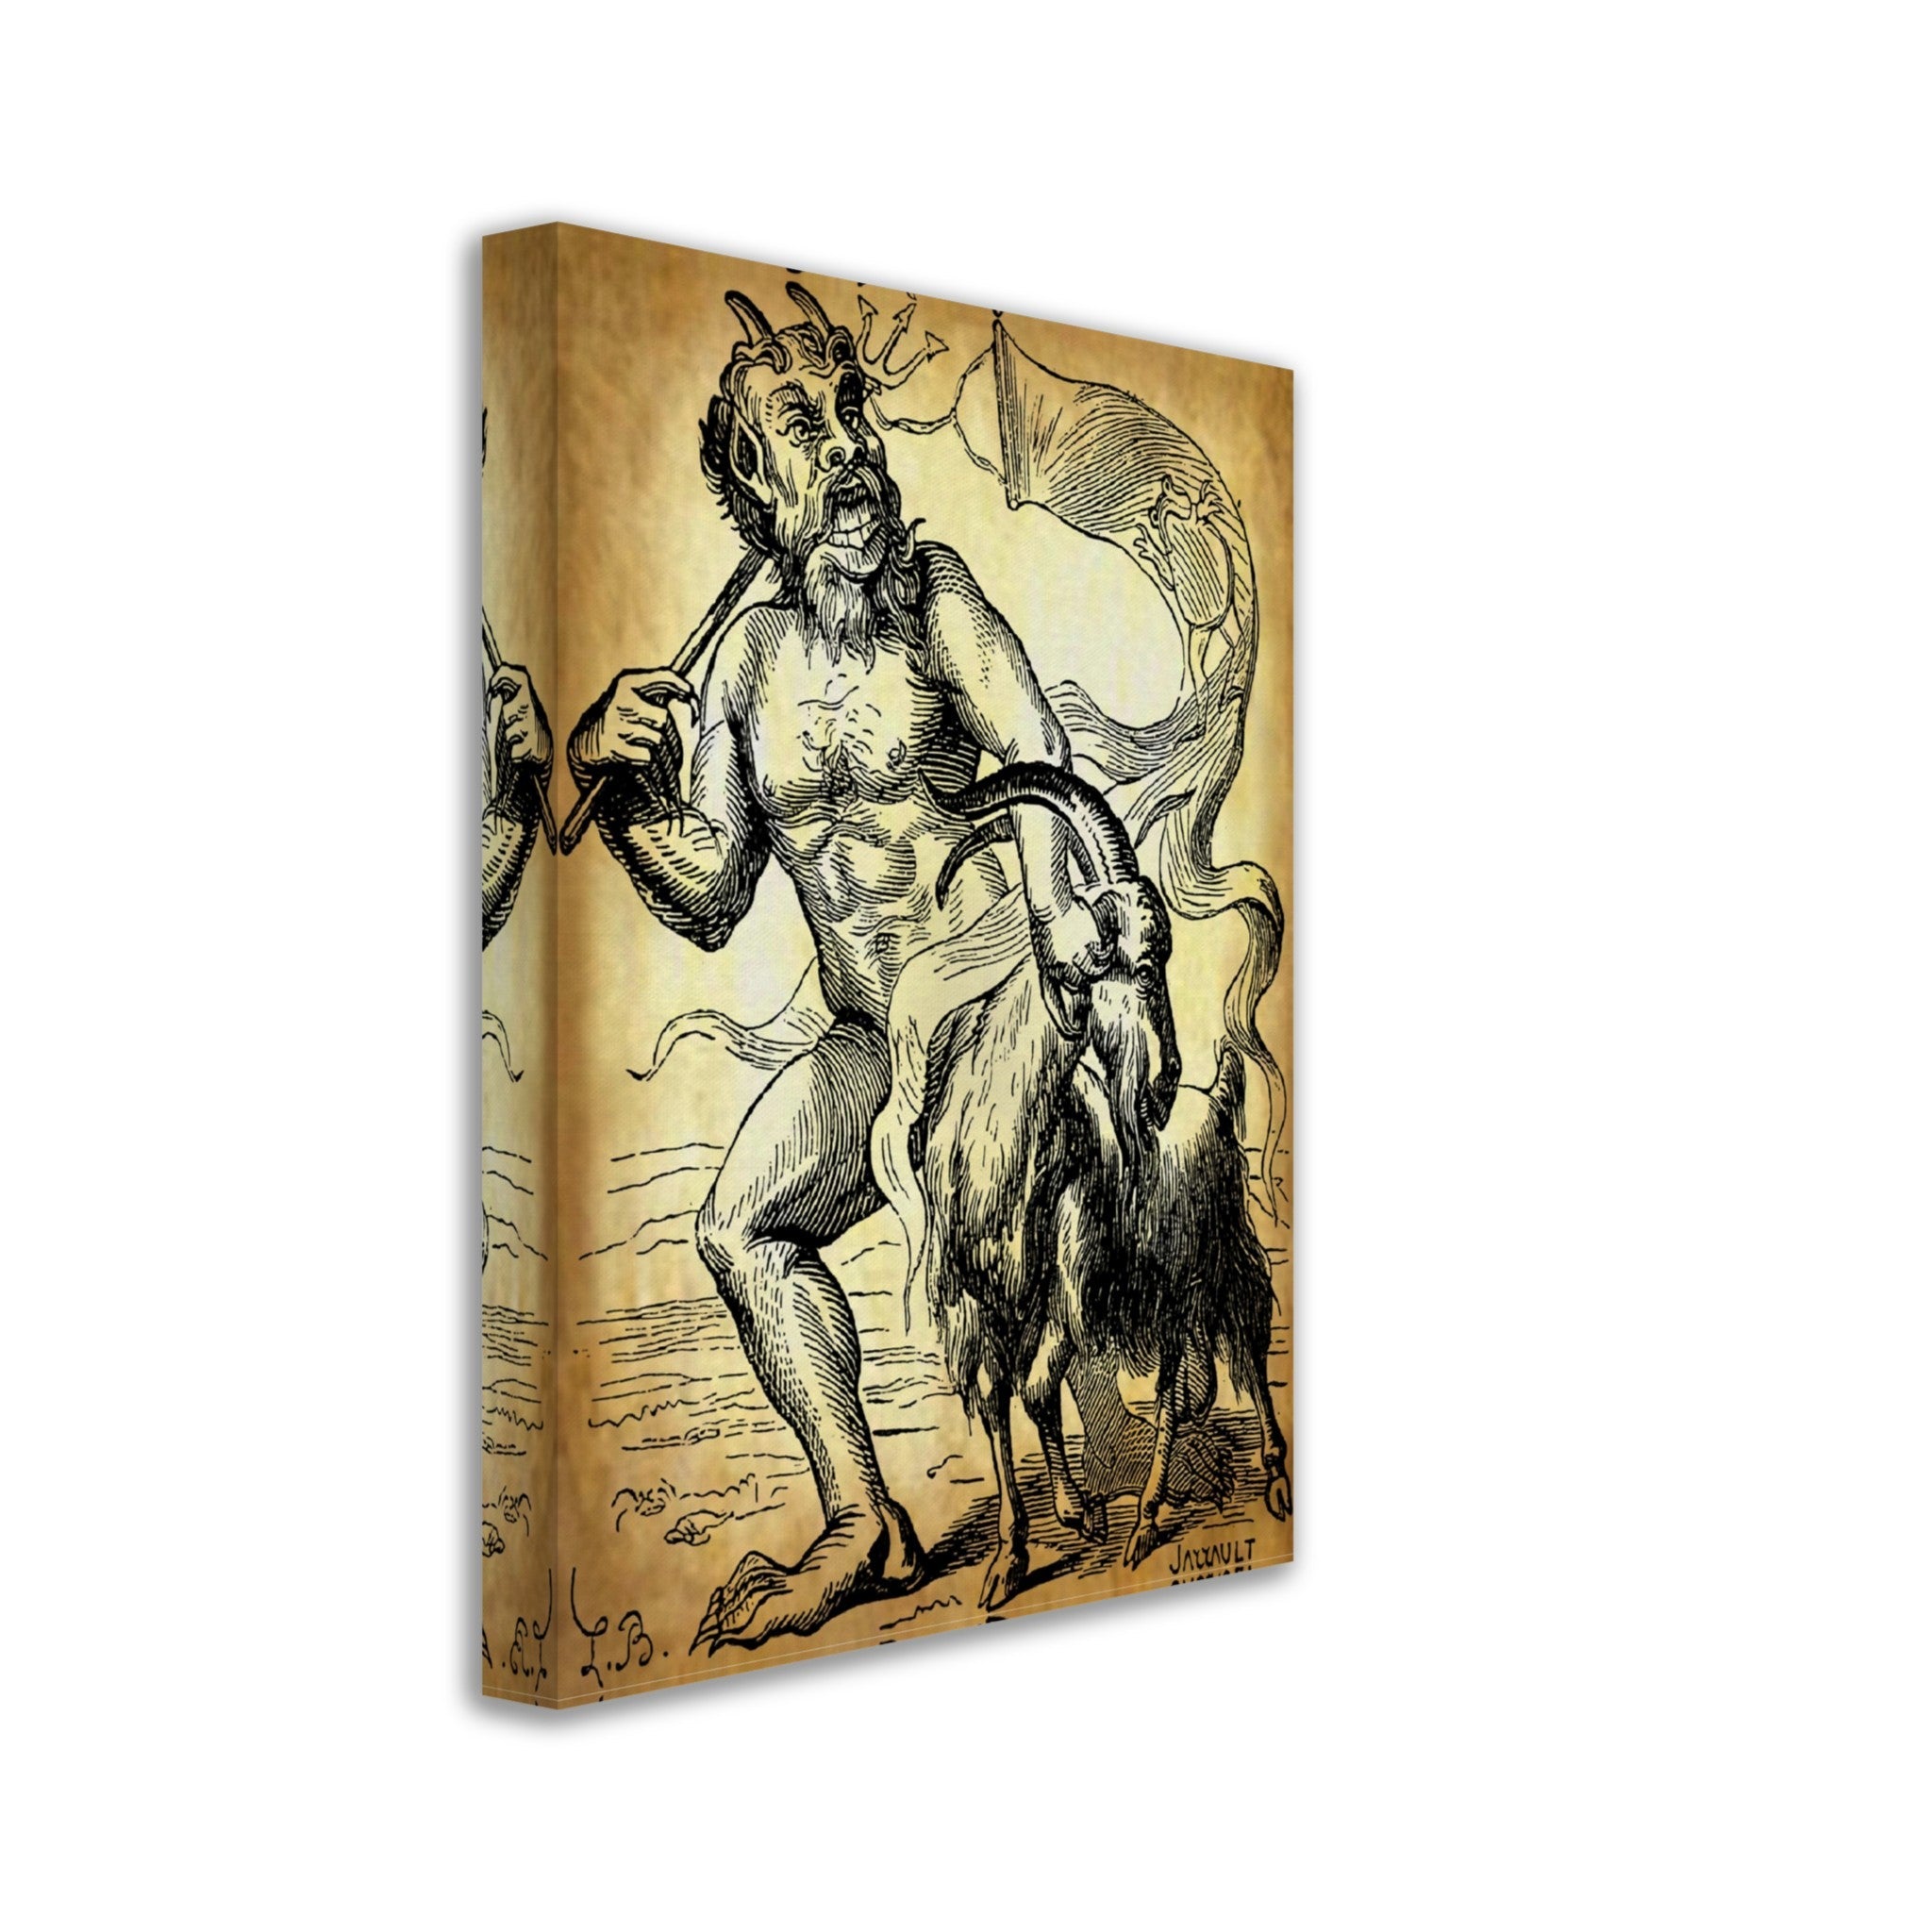 Demon Azazel Canvas - Vintage Demonic Art Canvas Print - Parchment Version - Louis De Bretton - WallArtPrints4U